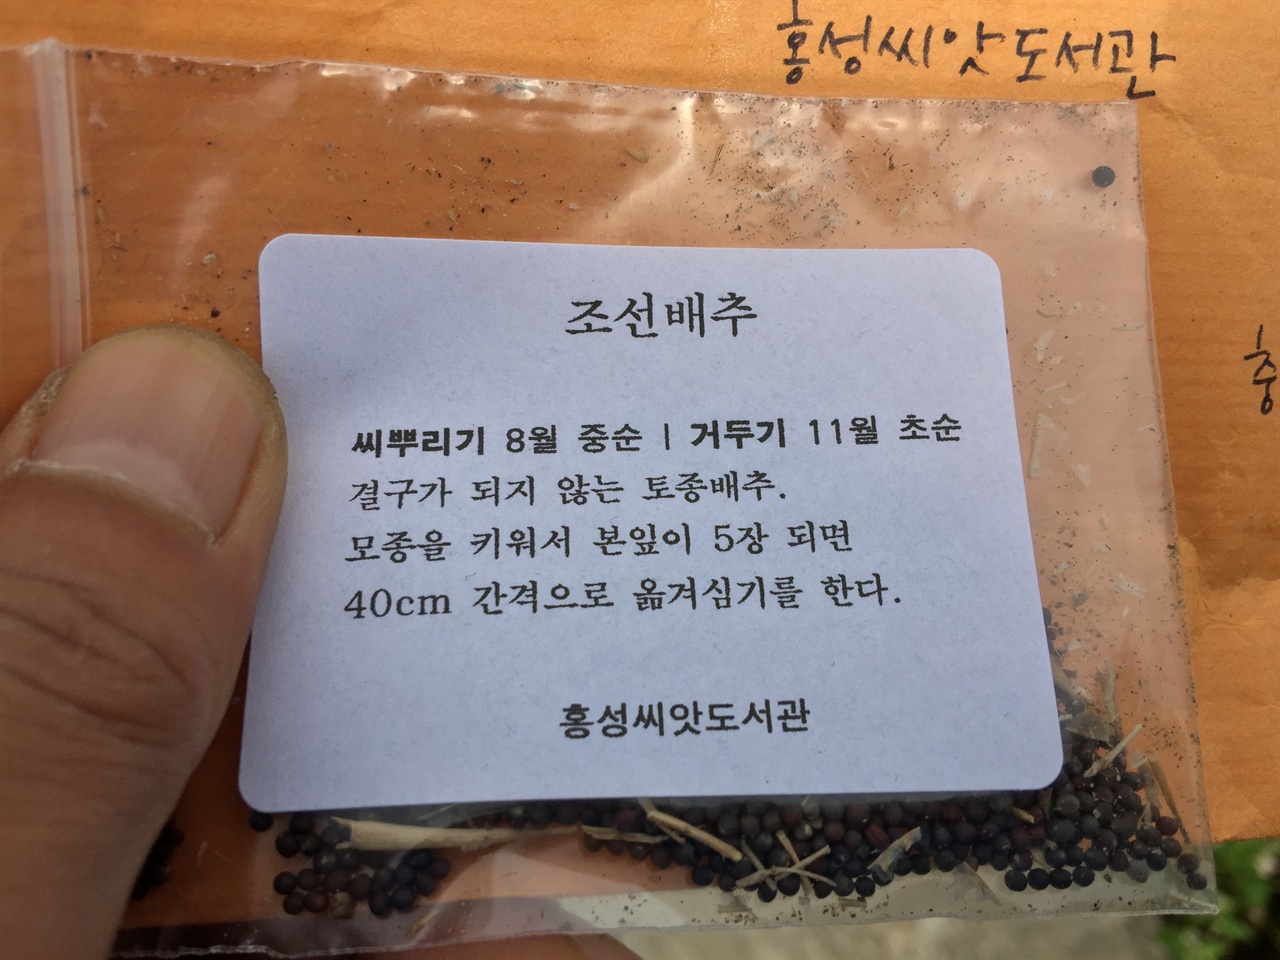 홍성씨앗도서관에서 온 조선배추 씨앗